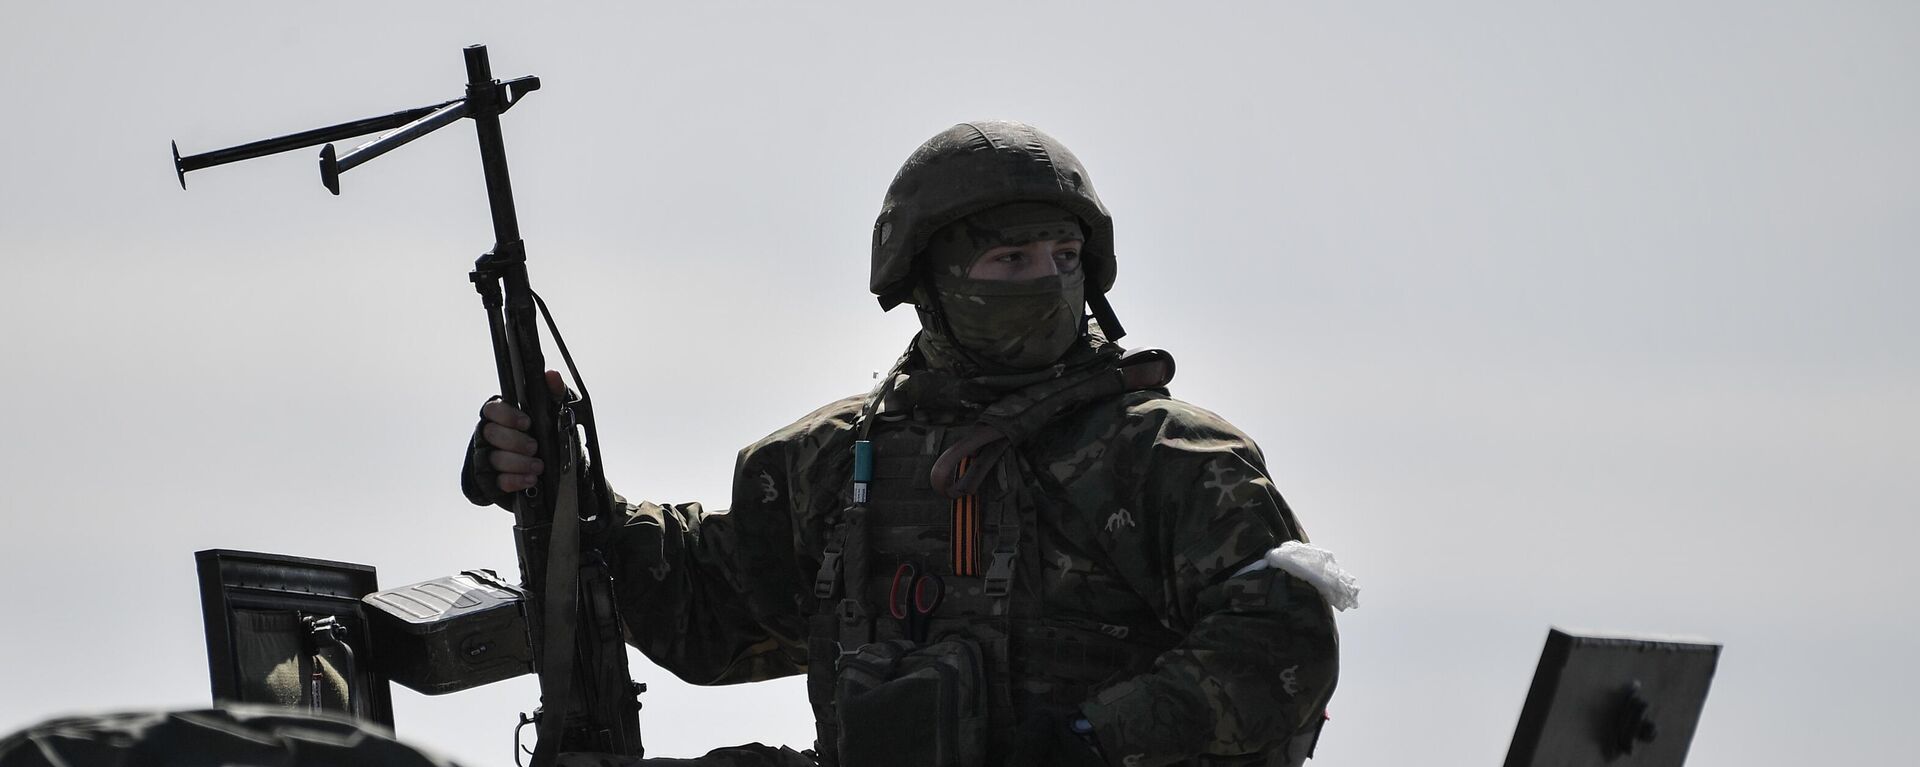 Một binh sĩ thuộc Lực lượng Vệ binh Quốc gia Nga tuần tra khu vực khi hoạt động quân sự của Nga ở Ukraine tiếp tục, ở Kherson, Ukraina - Sputnik Việt Nam, 1920, 08.05.2022